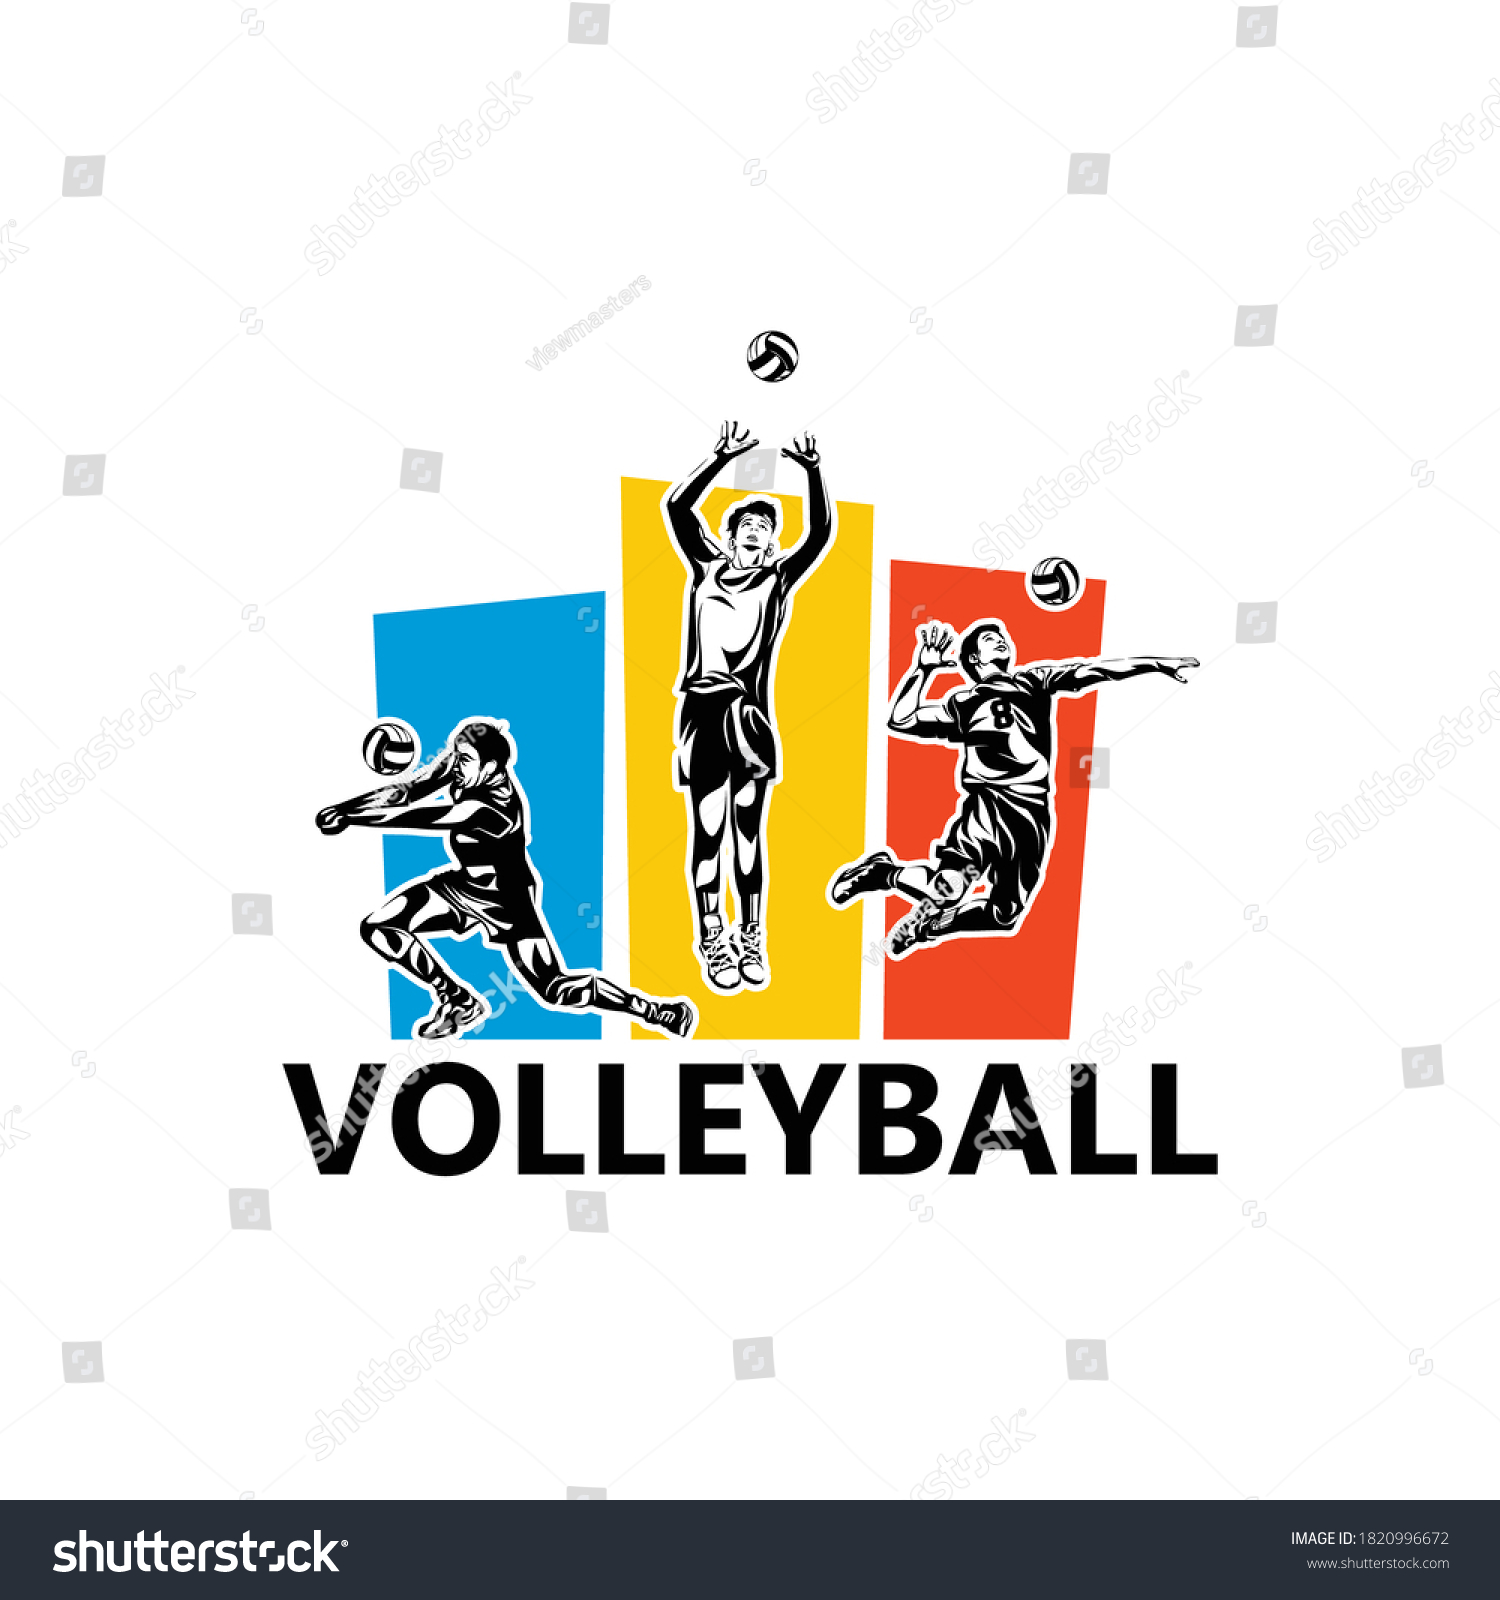 Volleyball Player Logo Template Design Vector Stock Vector (Royalty ...